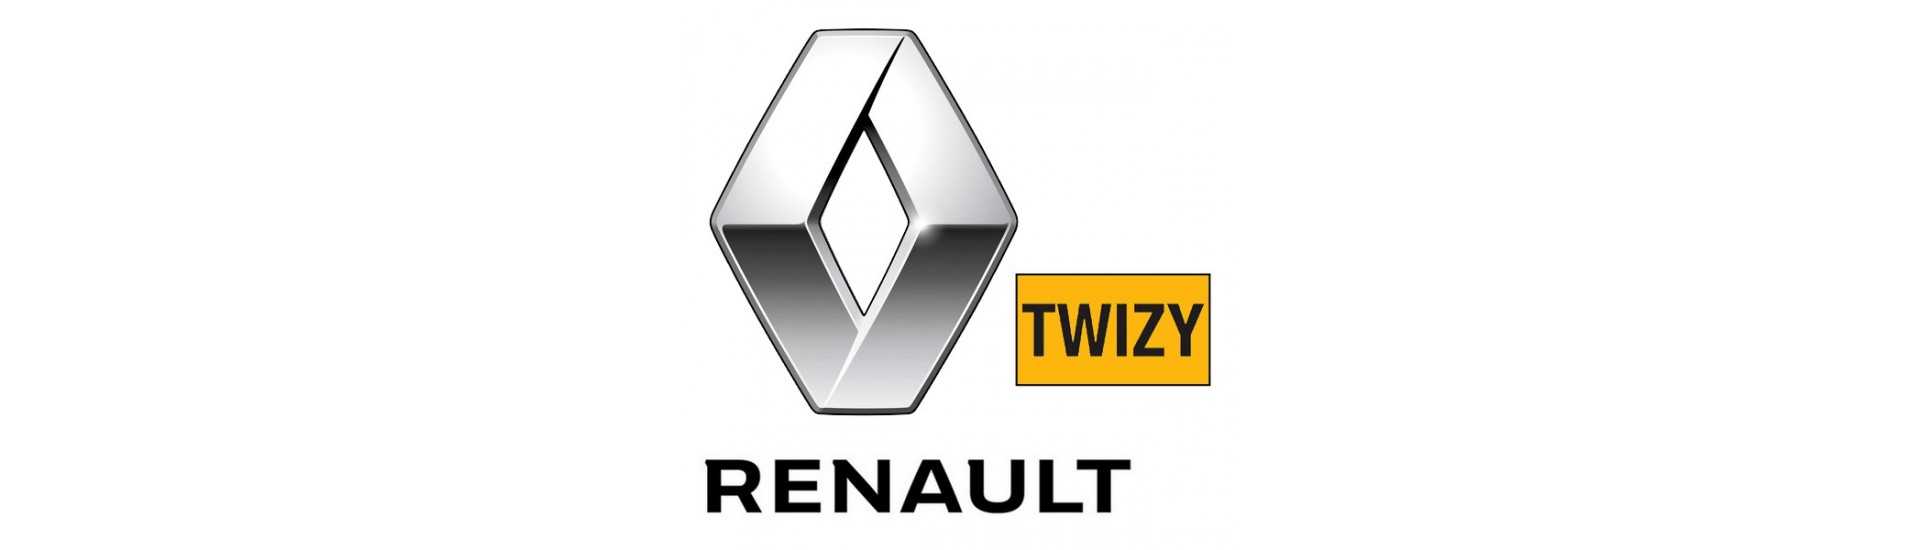 Roda de direção ao melhor preço do carro sem uma permissão Renault Twizy